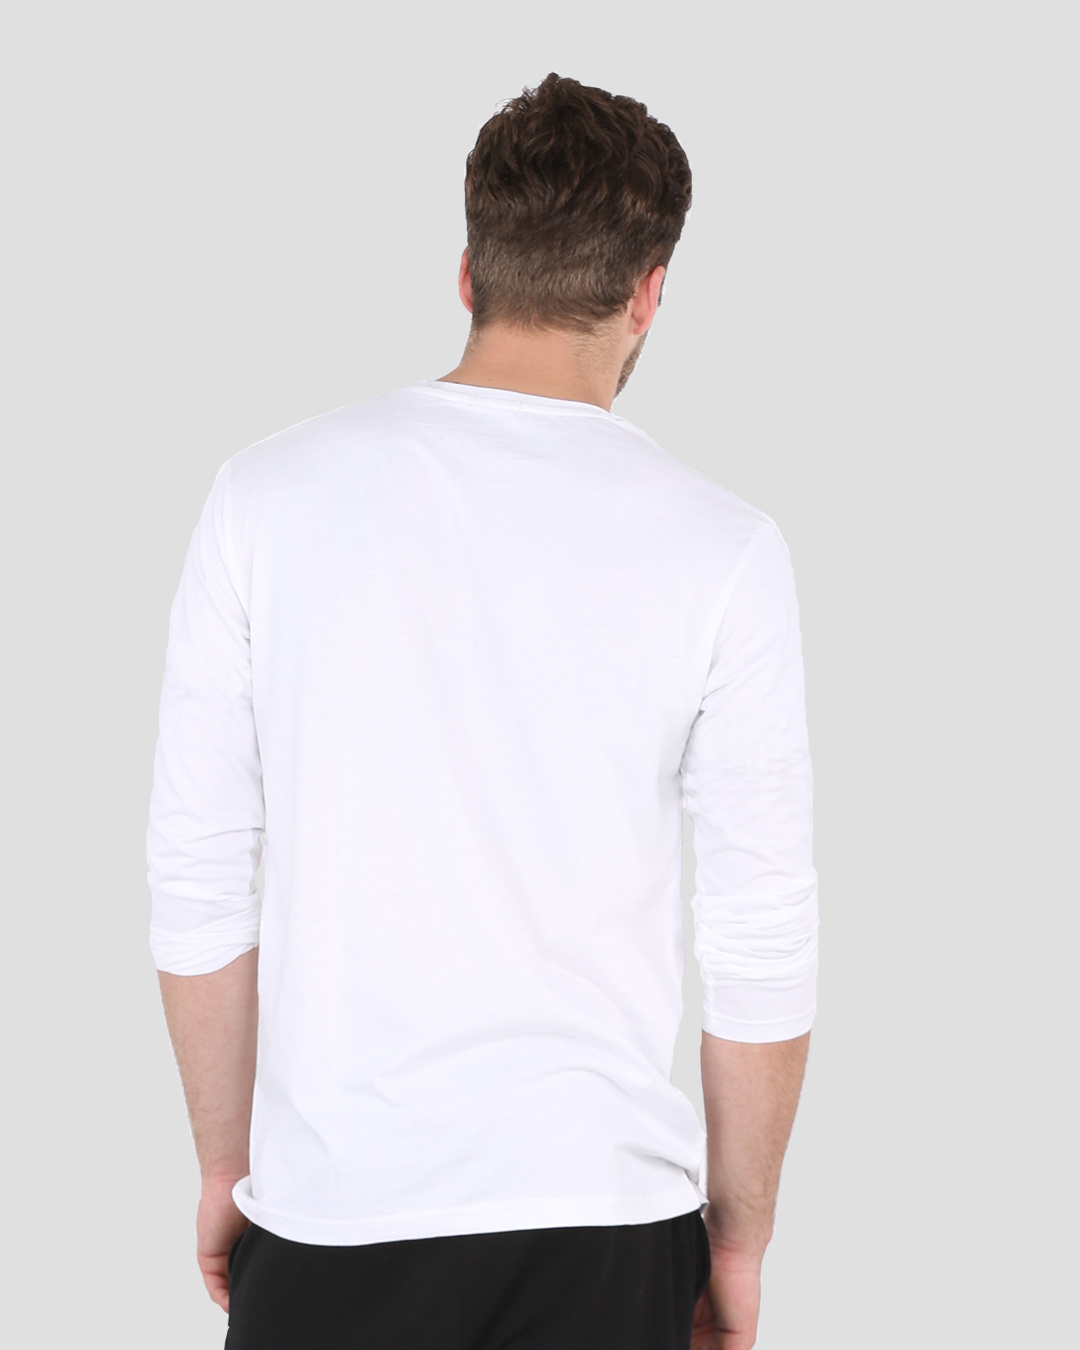 Buy The Traveller Men's Full Sleeve T-shirt Online at Bewakoof